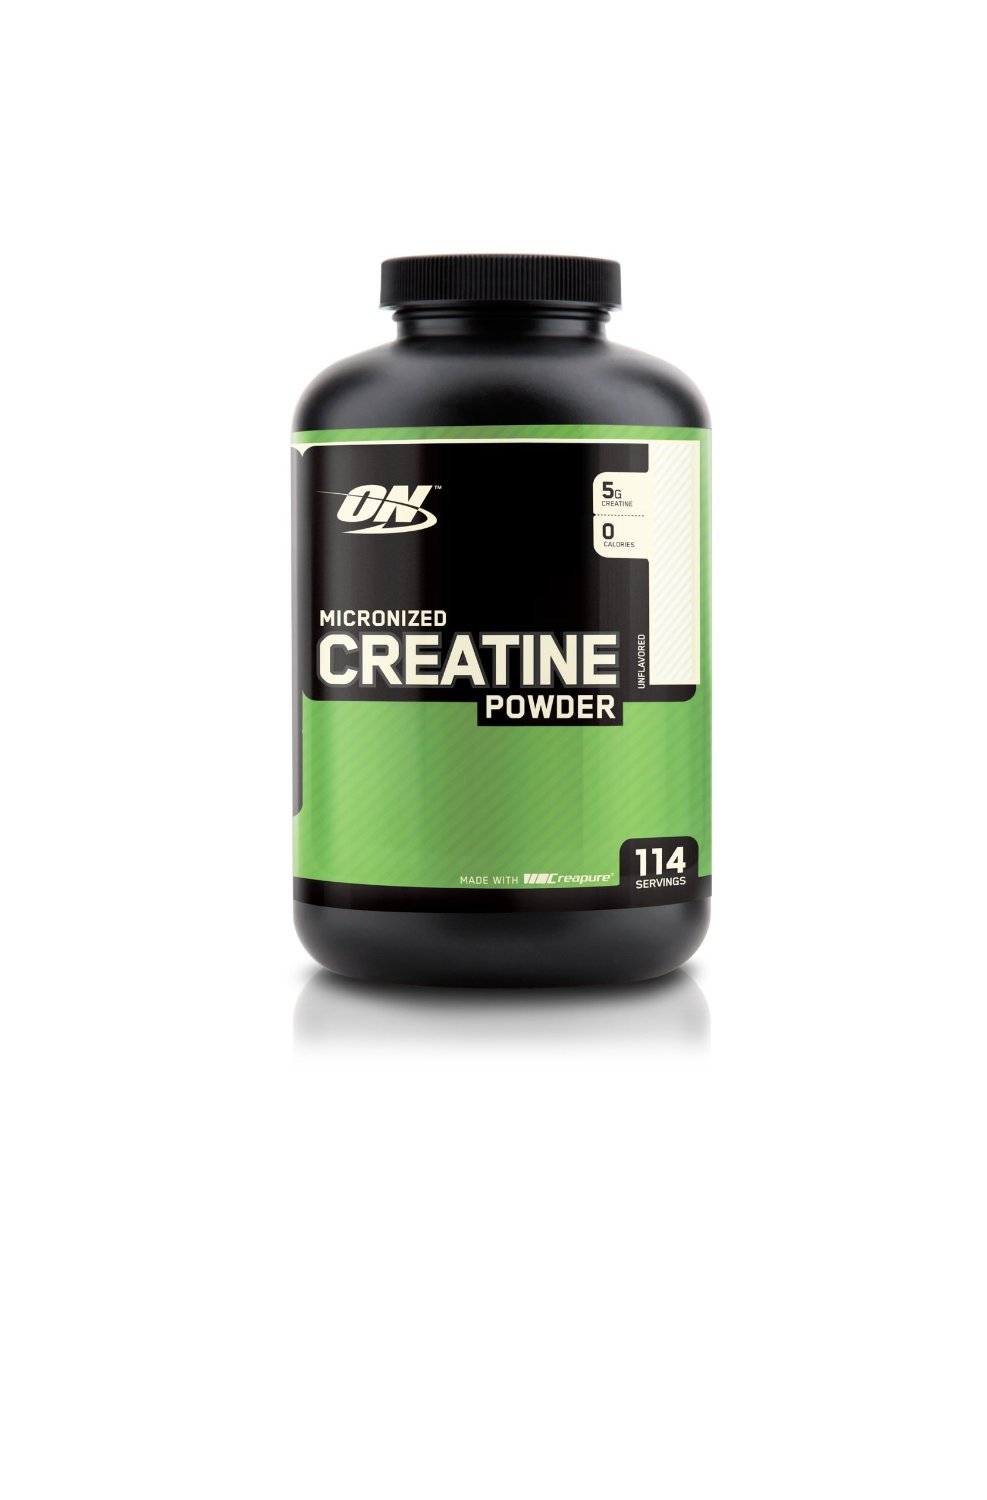 Creatine Powder, 600 г, Optimum Nutrition. Креатин моногидрат. Набор массы Энергия и выносливость Увеличение силы 